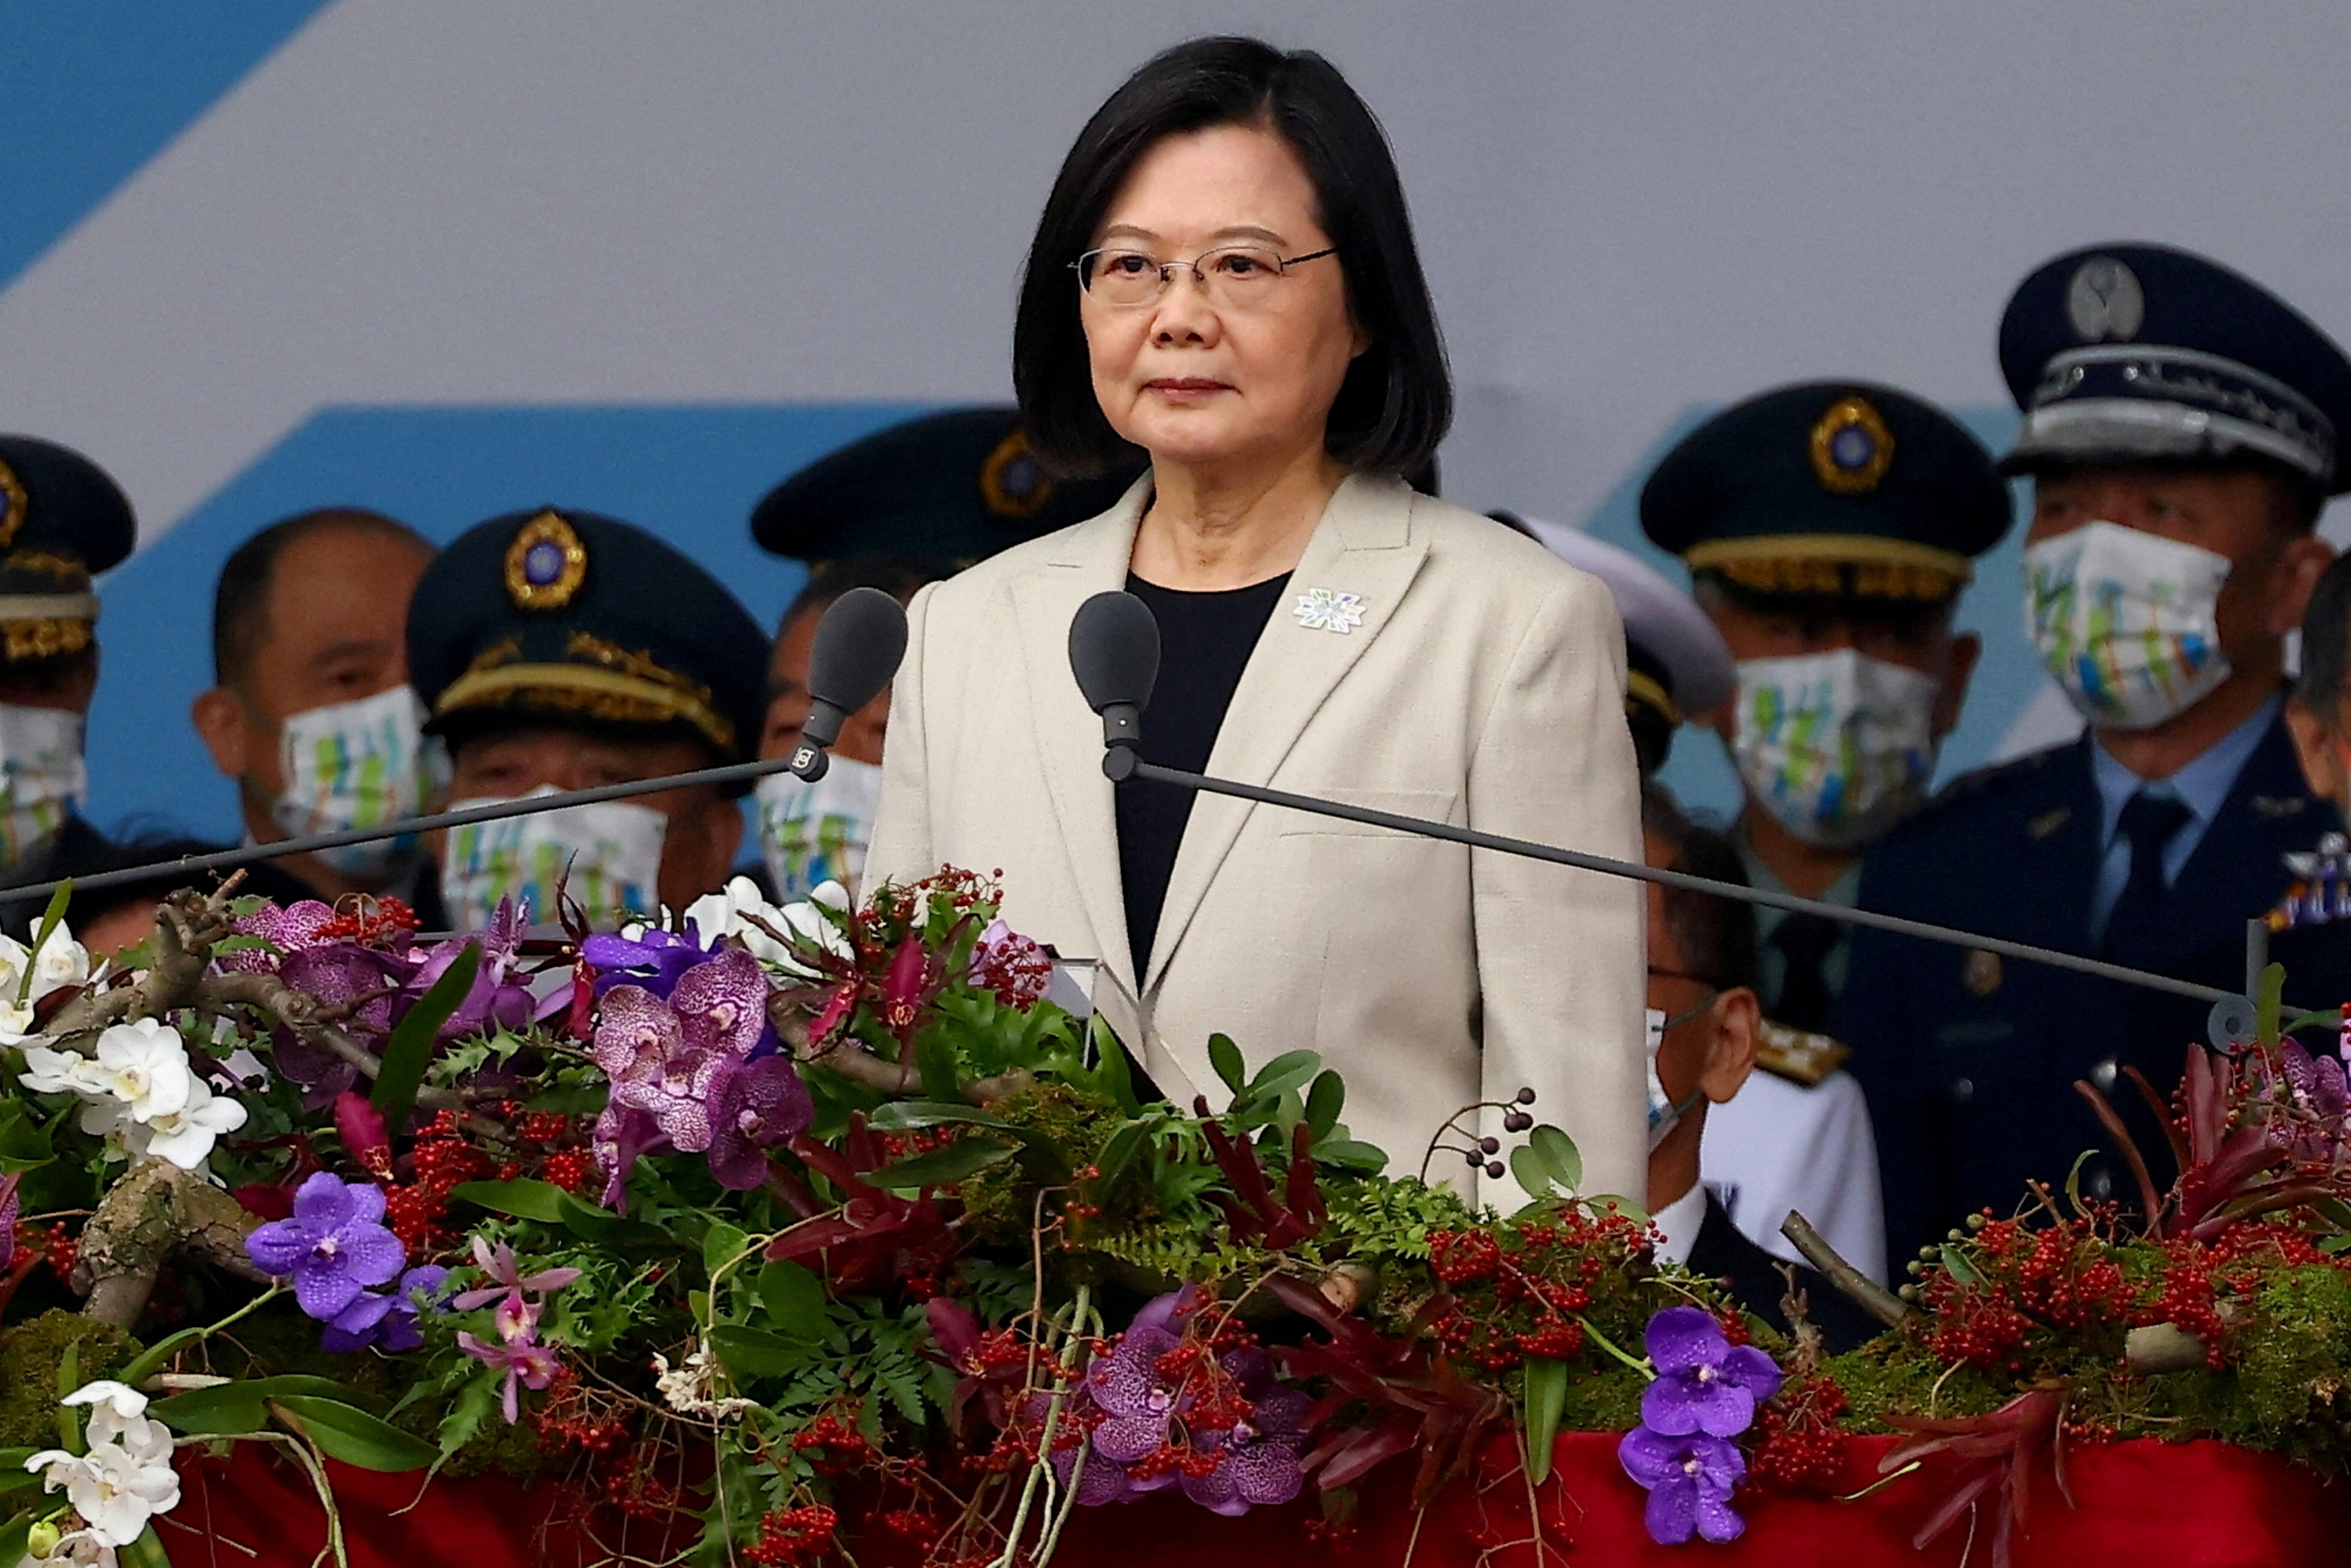 La presidenta de Taiwán contestó a las amenazas de Xi Jinping: “Taiwán es  un país soberano y democrático” - Infobae